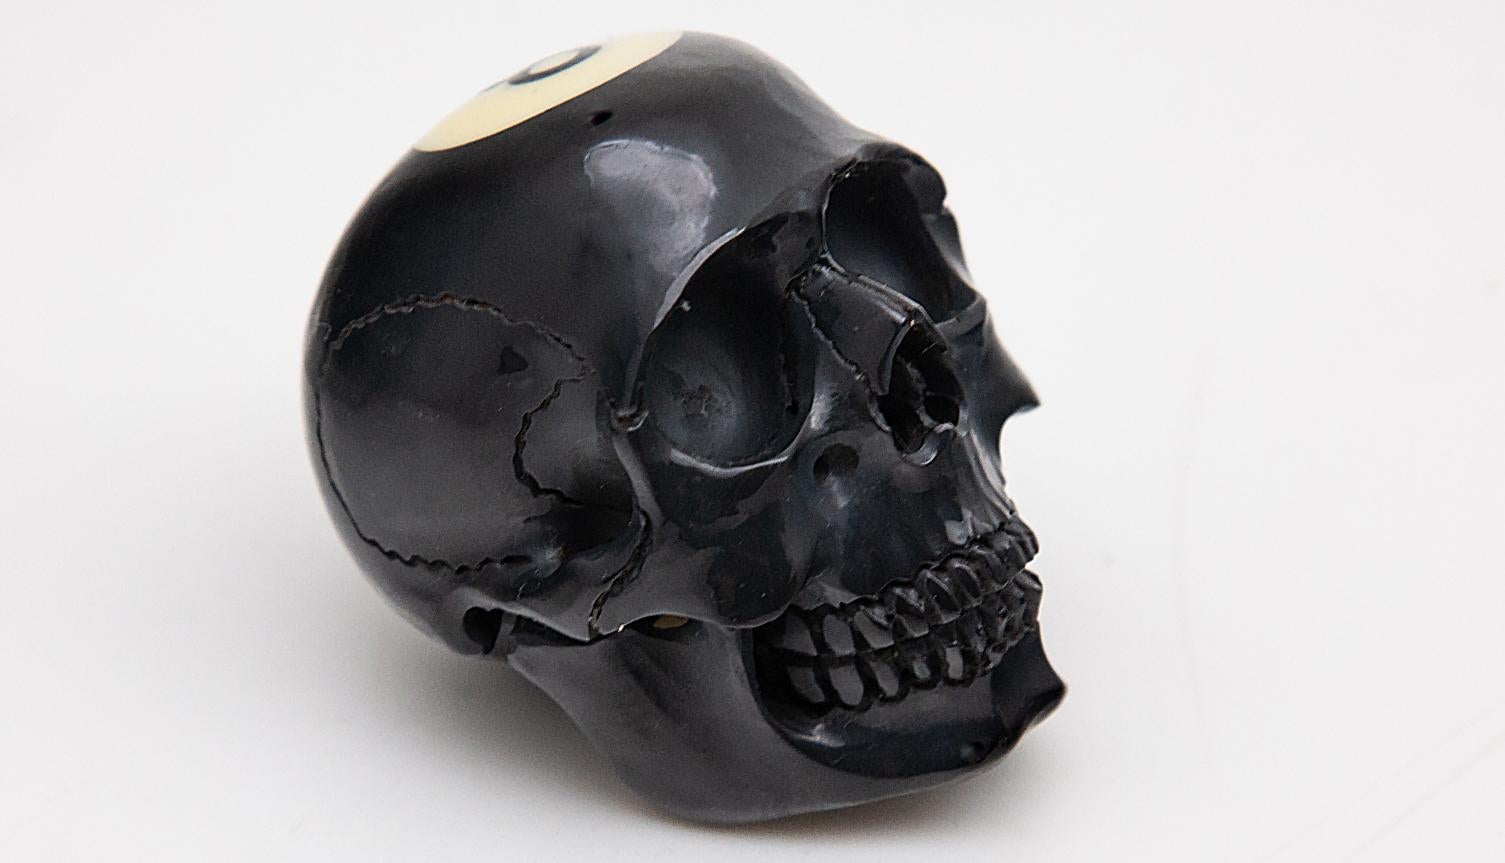 Contemporary Black 8 Ball Skull